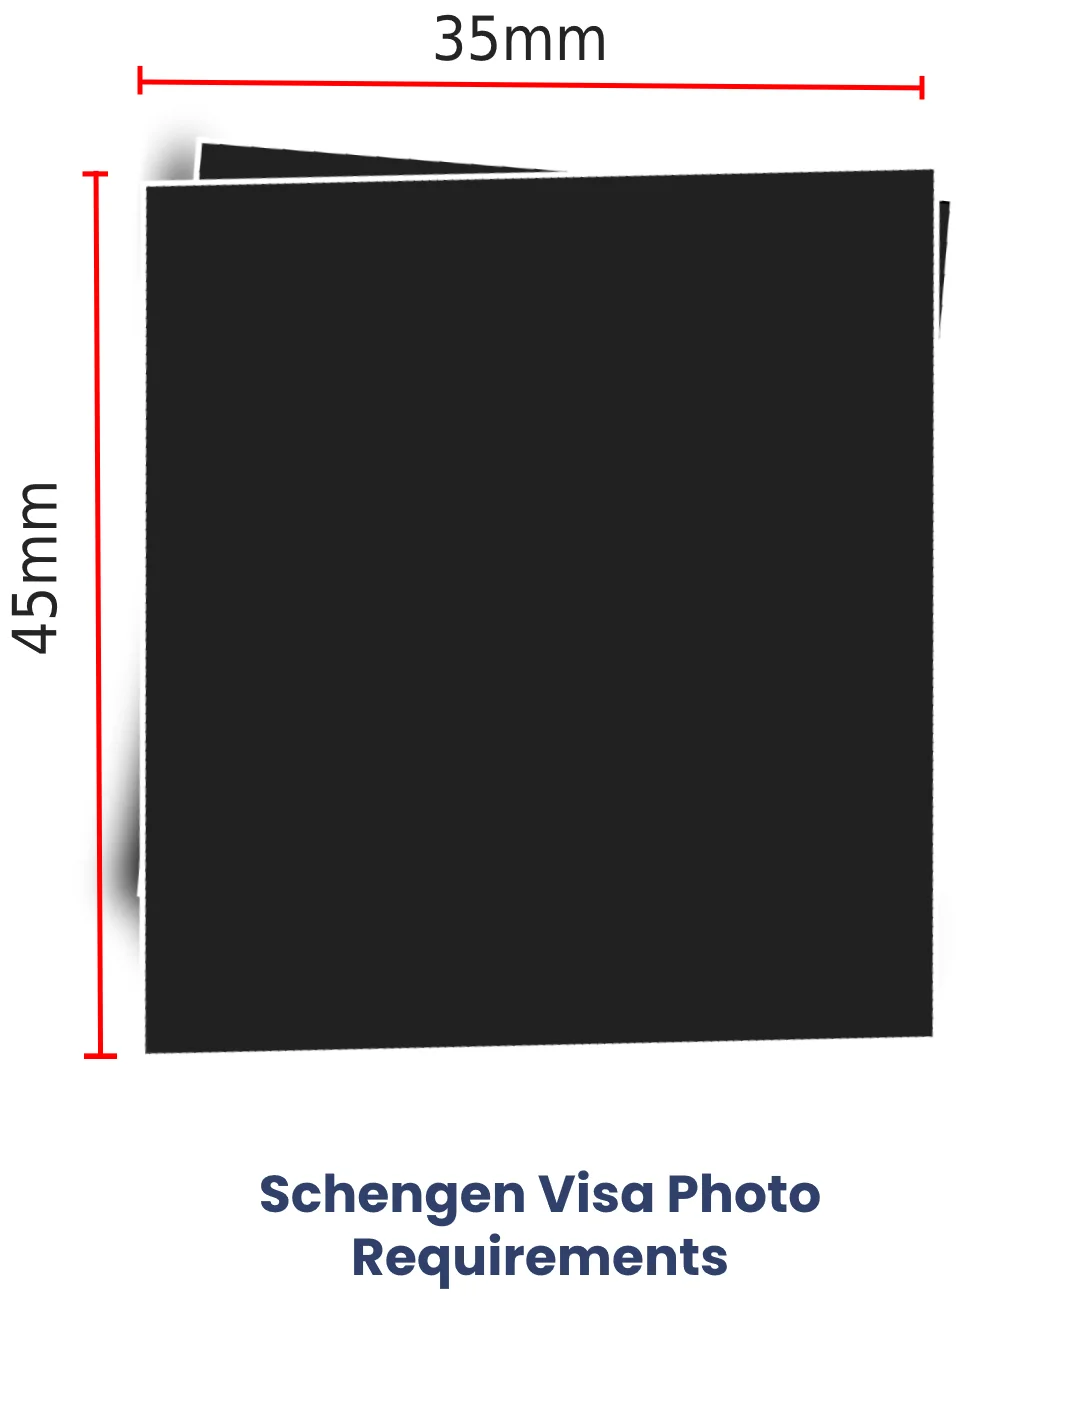 Schengen visa photo requirements